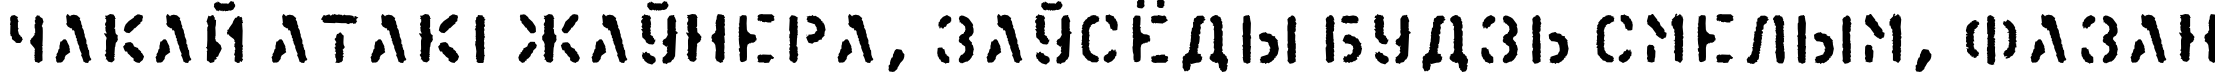 Пример написания шрифтом KartonC текста на белорусском